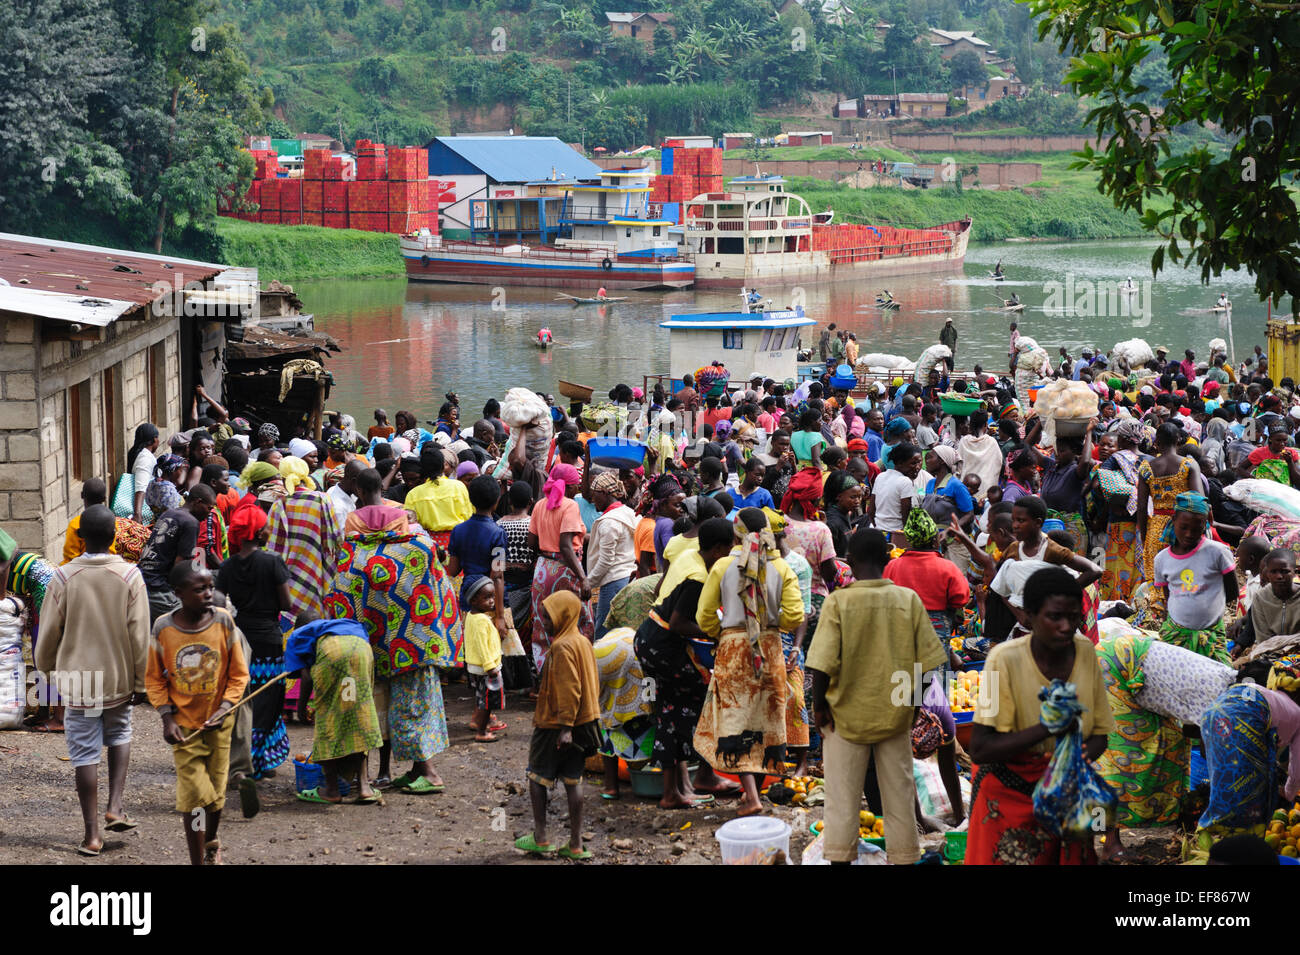 Dorfbewohner versammeln sich um Fracht Boote kommen aus dem Kongo mit Früchten und anderen Gütern. Kivu-See. Ruanda Stockfoto